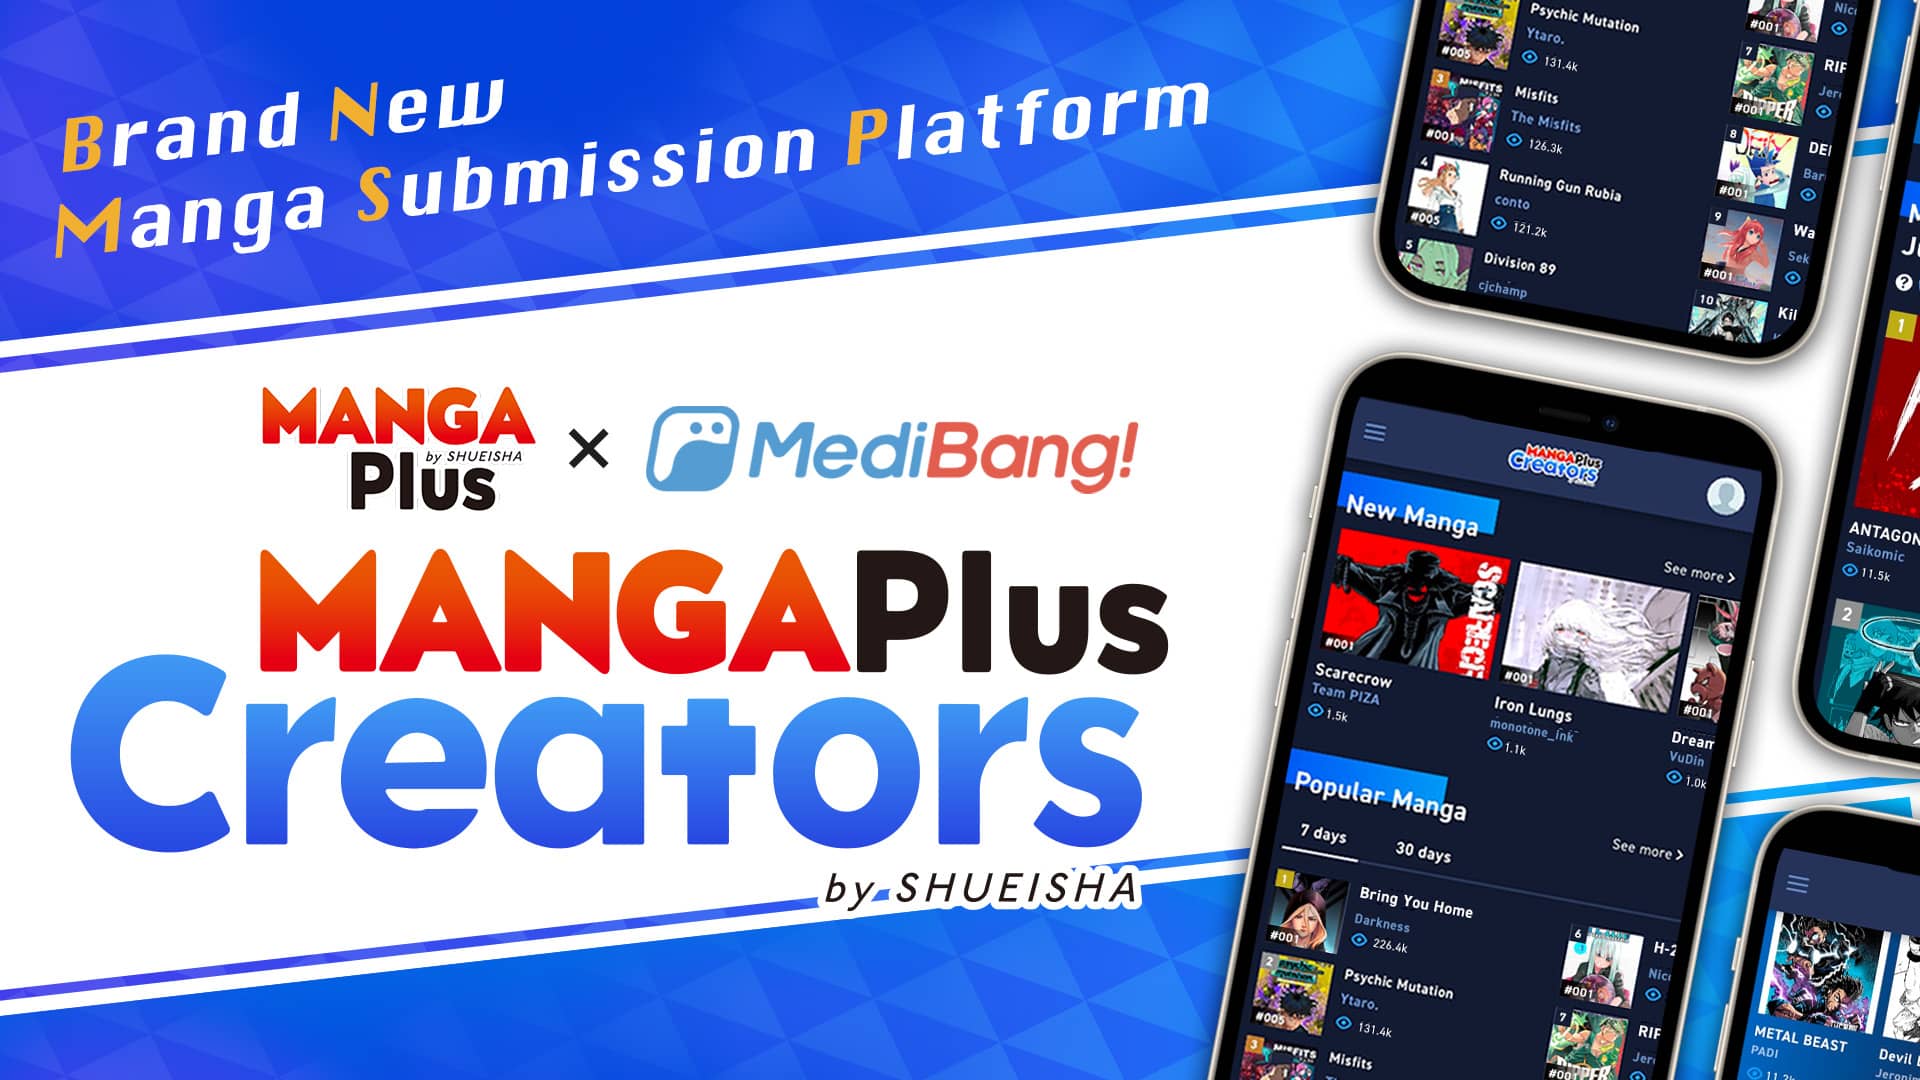 MANGA Plus: App gratuito da SHUEISHA passa a ter traduções para